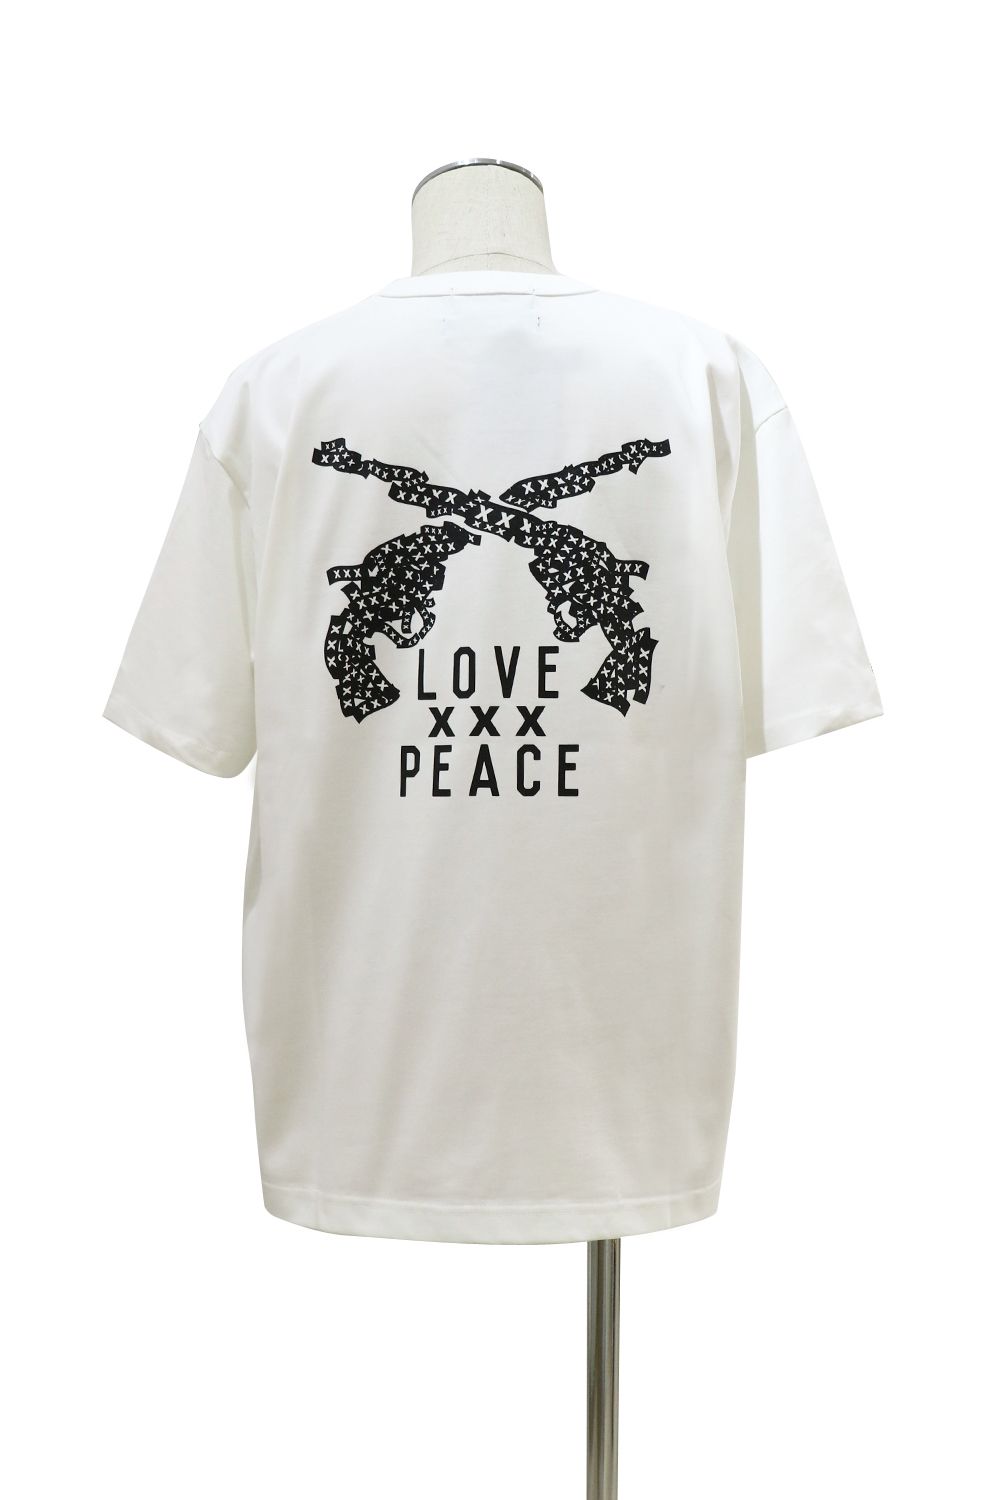 新品 GOD SELECTION XXX Guns N' Roses Tシャツ